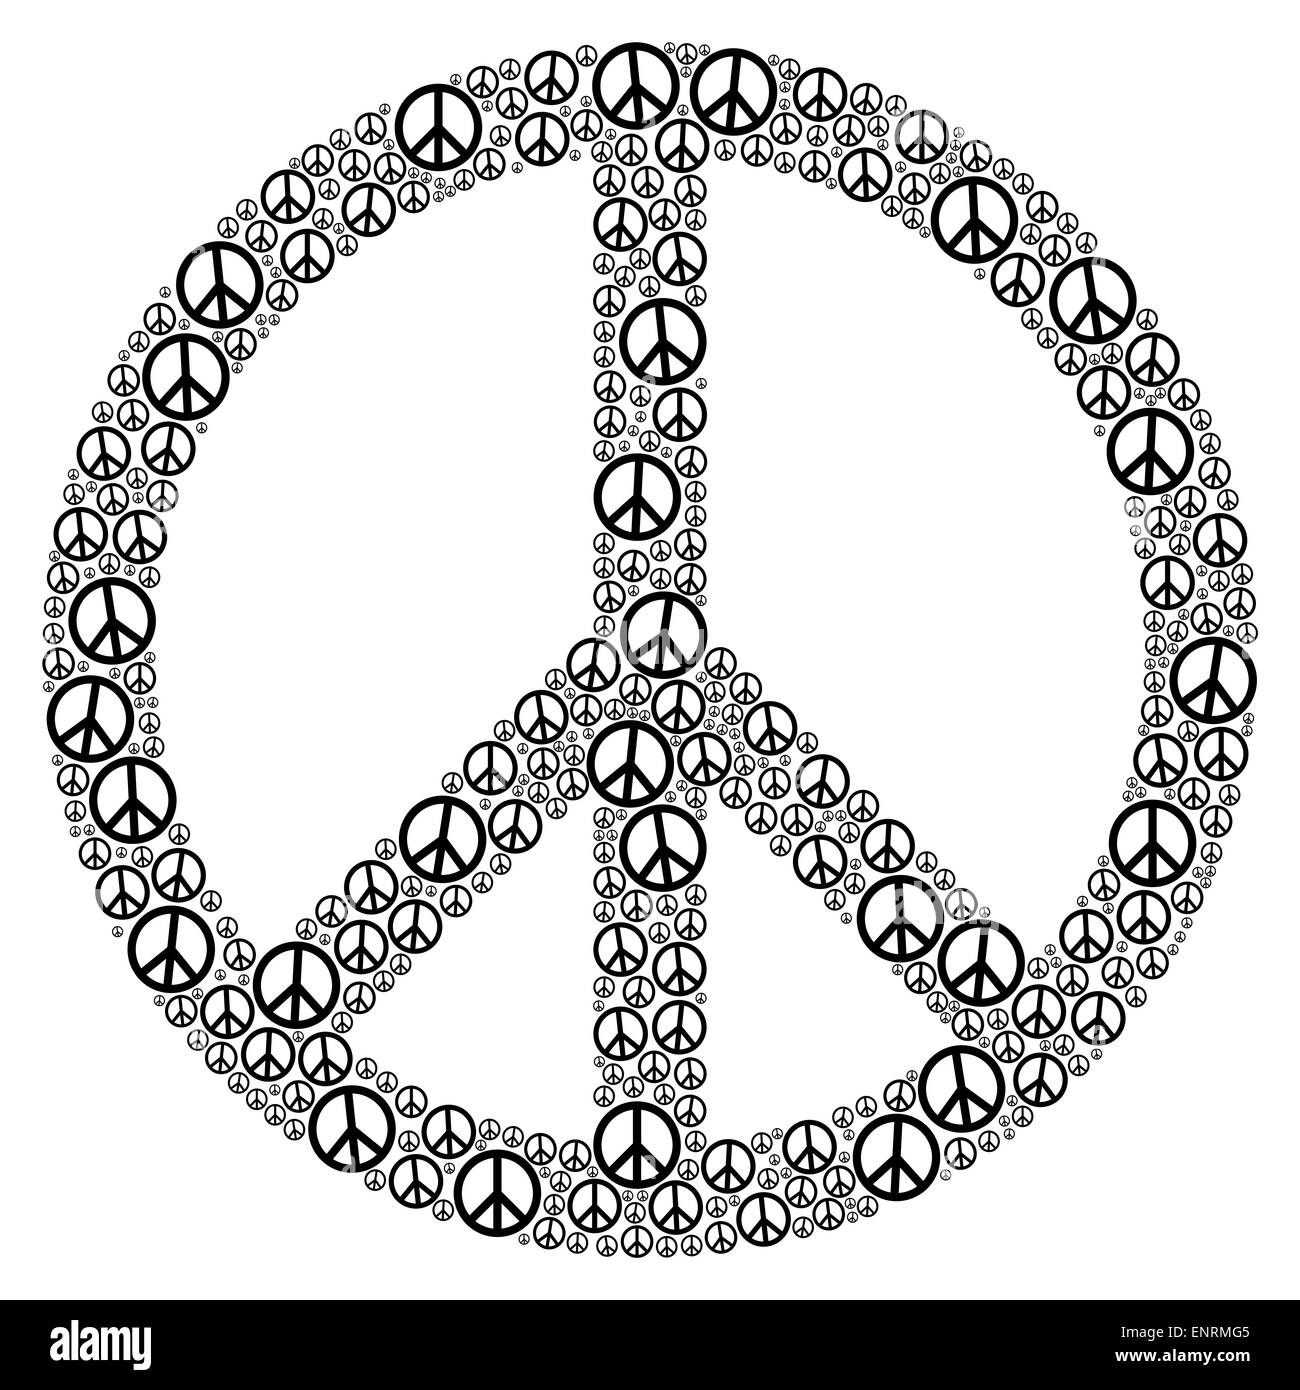 Signo de paz formado por muchos pequeños símbolos de paz. Ilustración sobre fondo blanco. Foto de stock